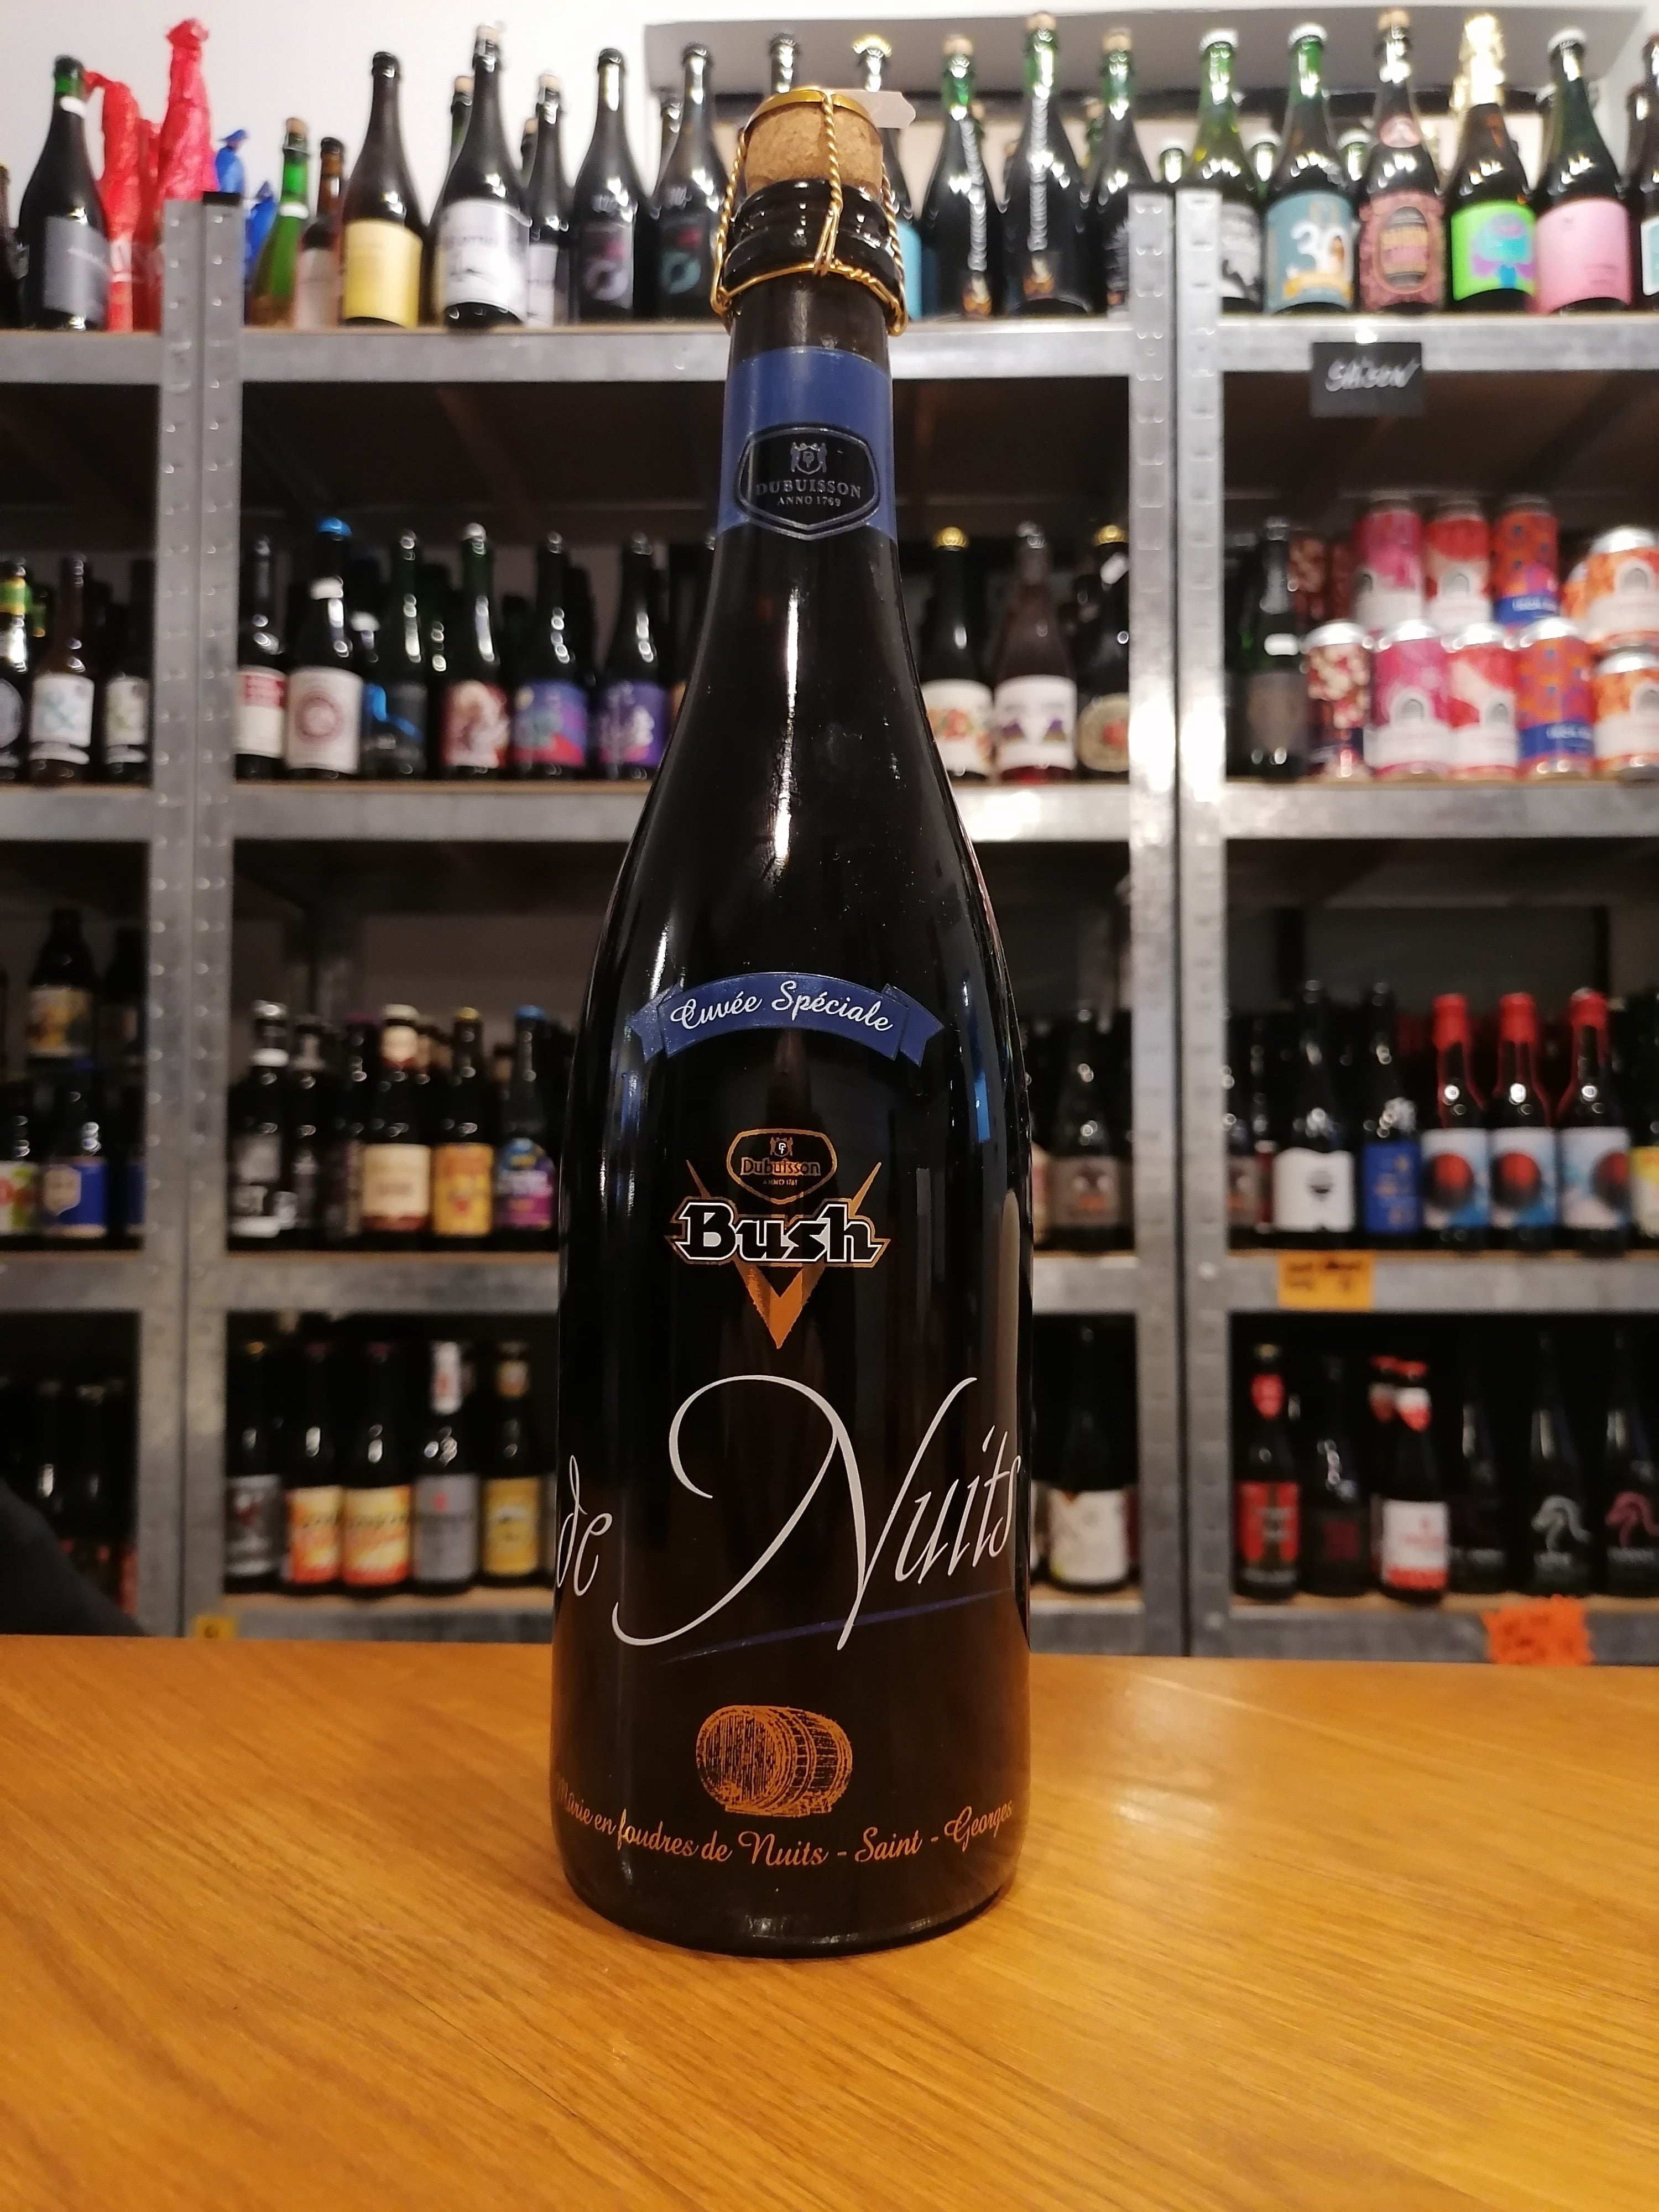 Brug Bush de Nuits Cuvée Spéciale (Mørk ale, 12.5%, 75cl) - Brasserie Dubuisson til en forbedret oplevelse